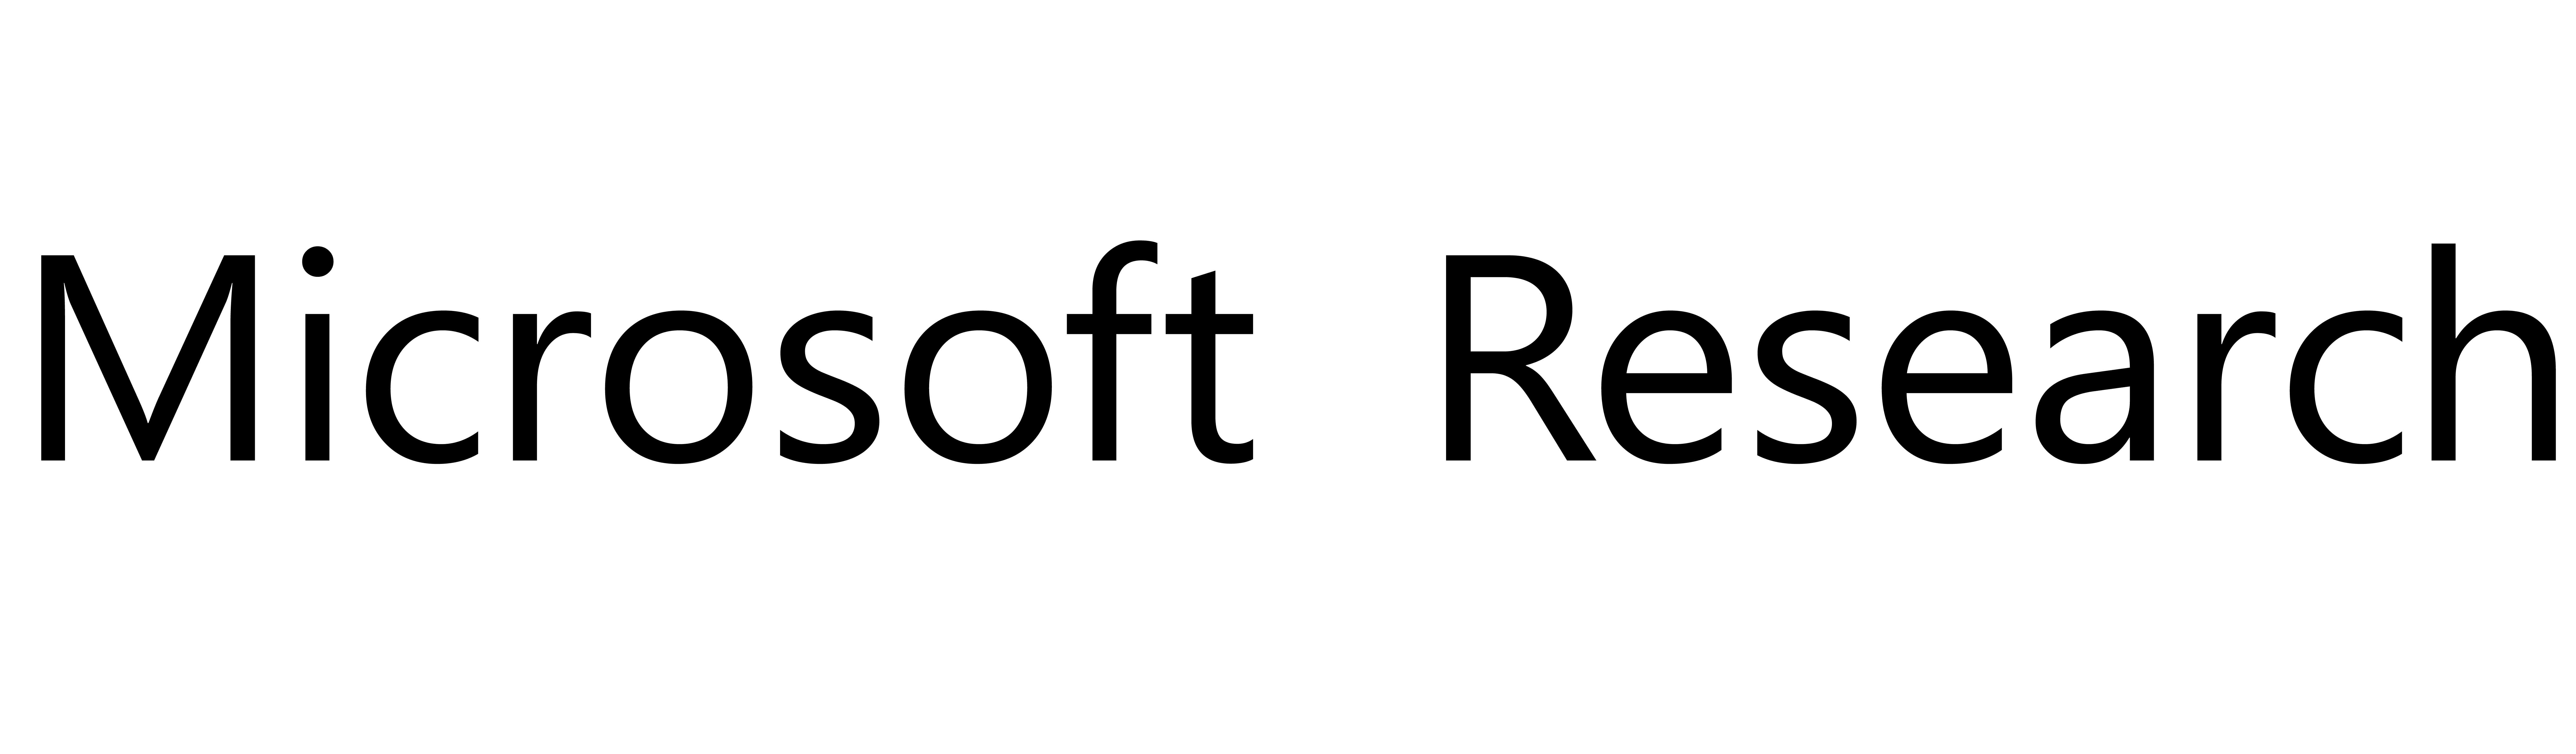 Microsoft Research Logo